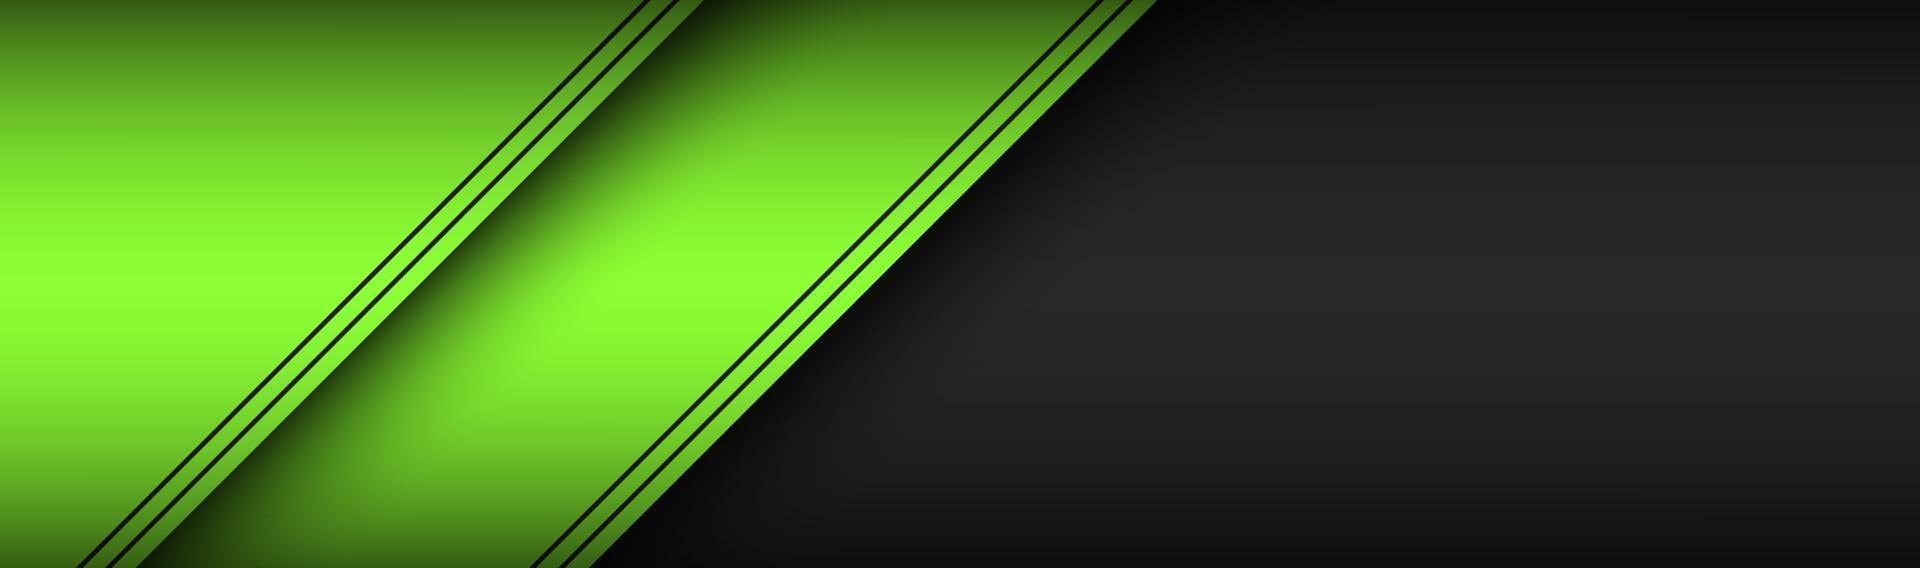 encabezado de diseño de material negro y verde banner de tecnología moderna con hojas de papel superpuestas con líneas negras ilustración de vector de pantalla ancha